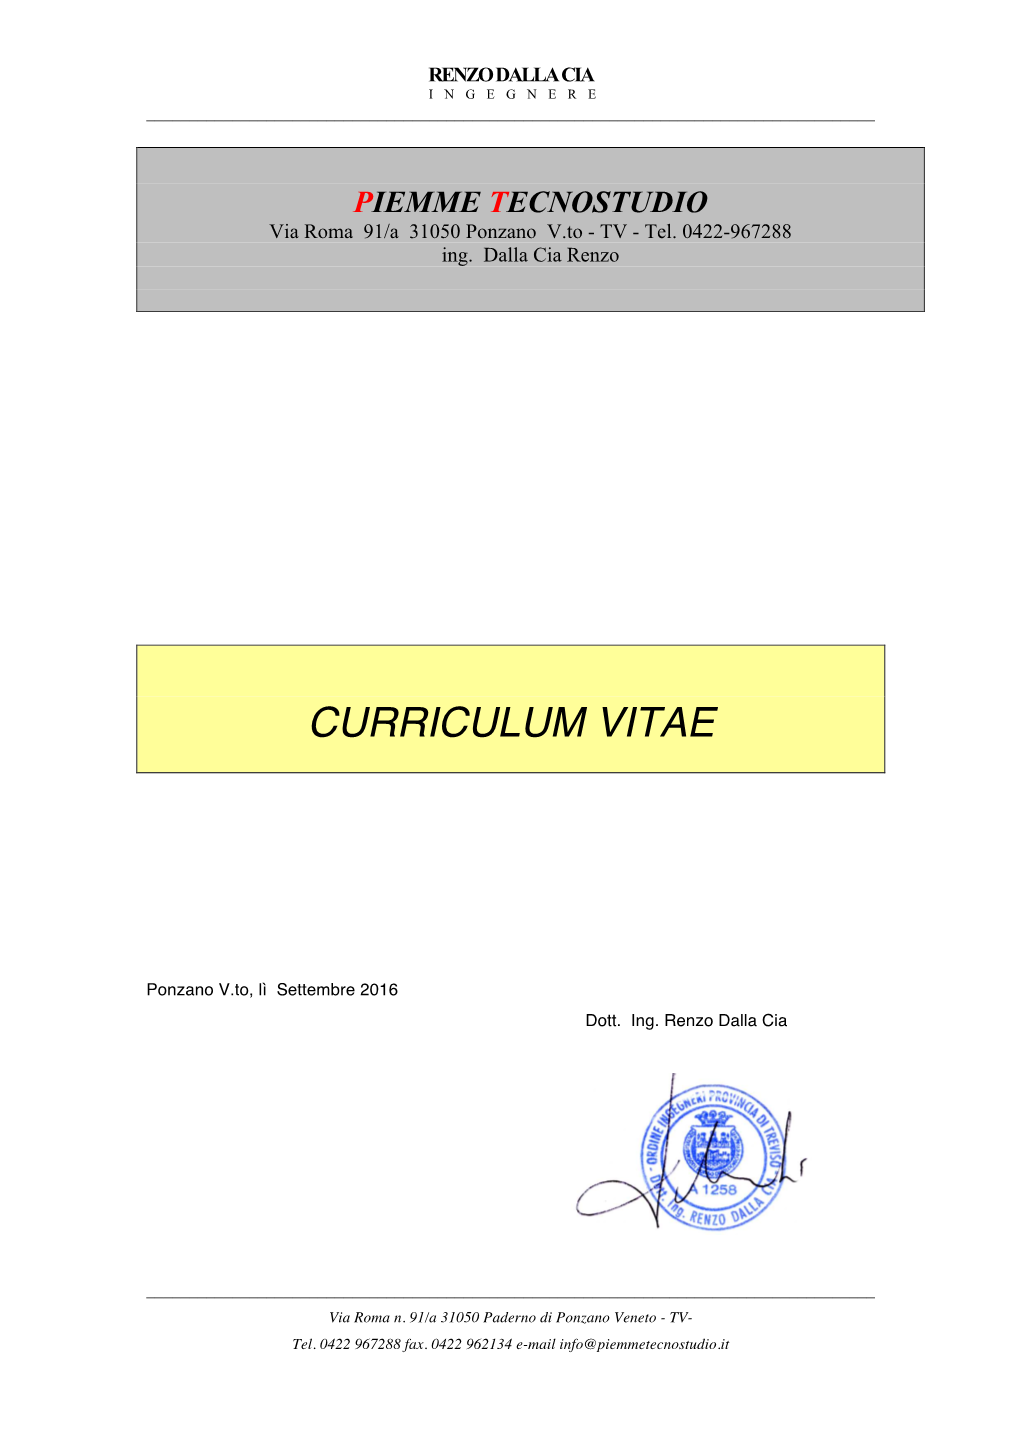 Curriculum Vitae Renzo10 2016